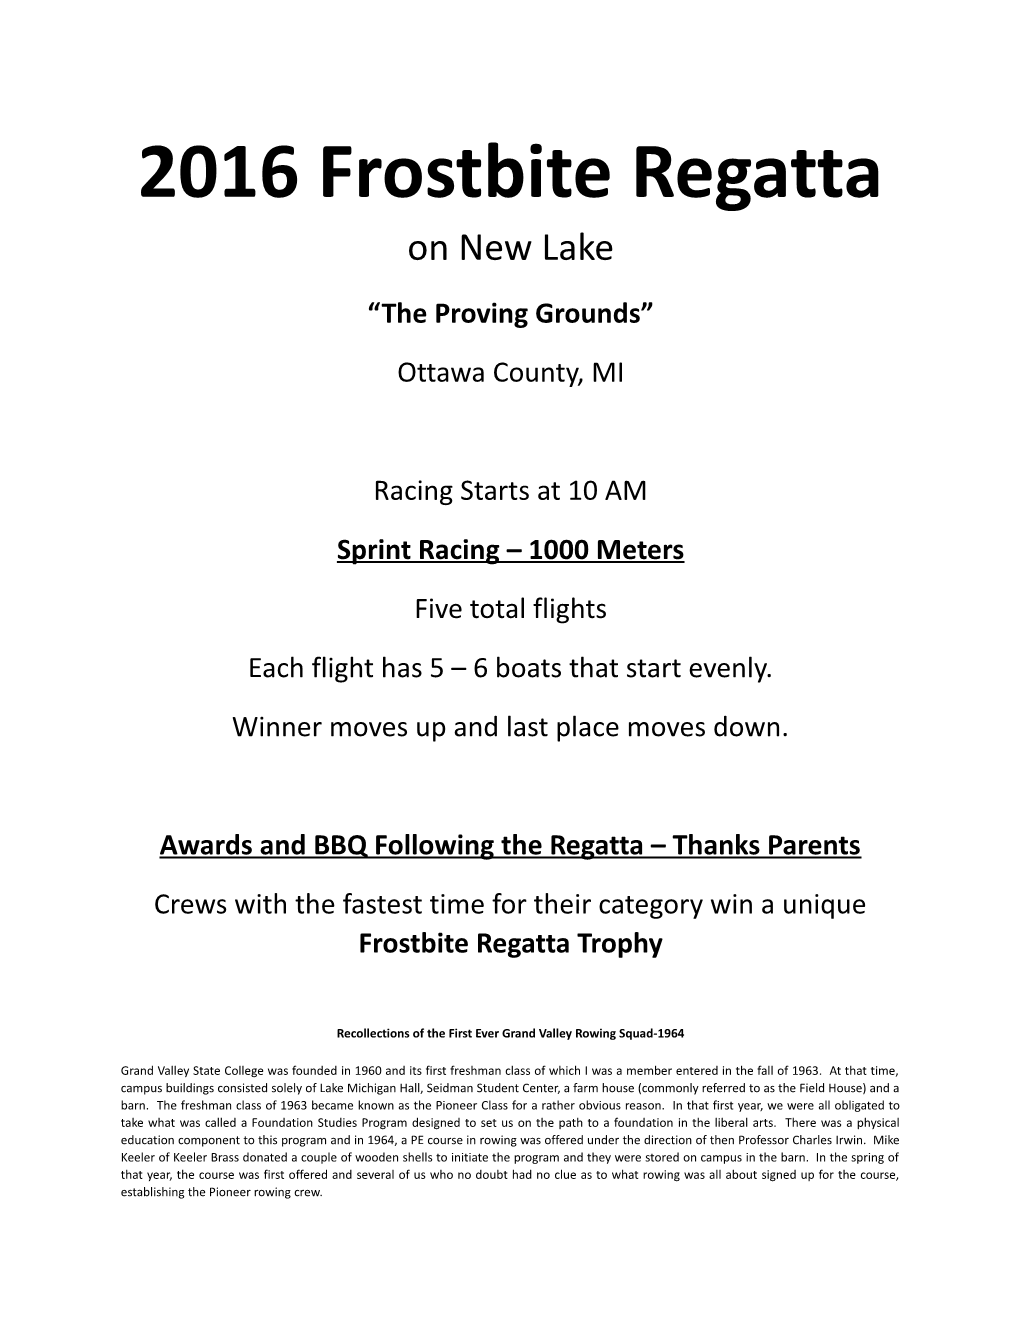 2016 Frostbite Regatta on New Lake